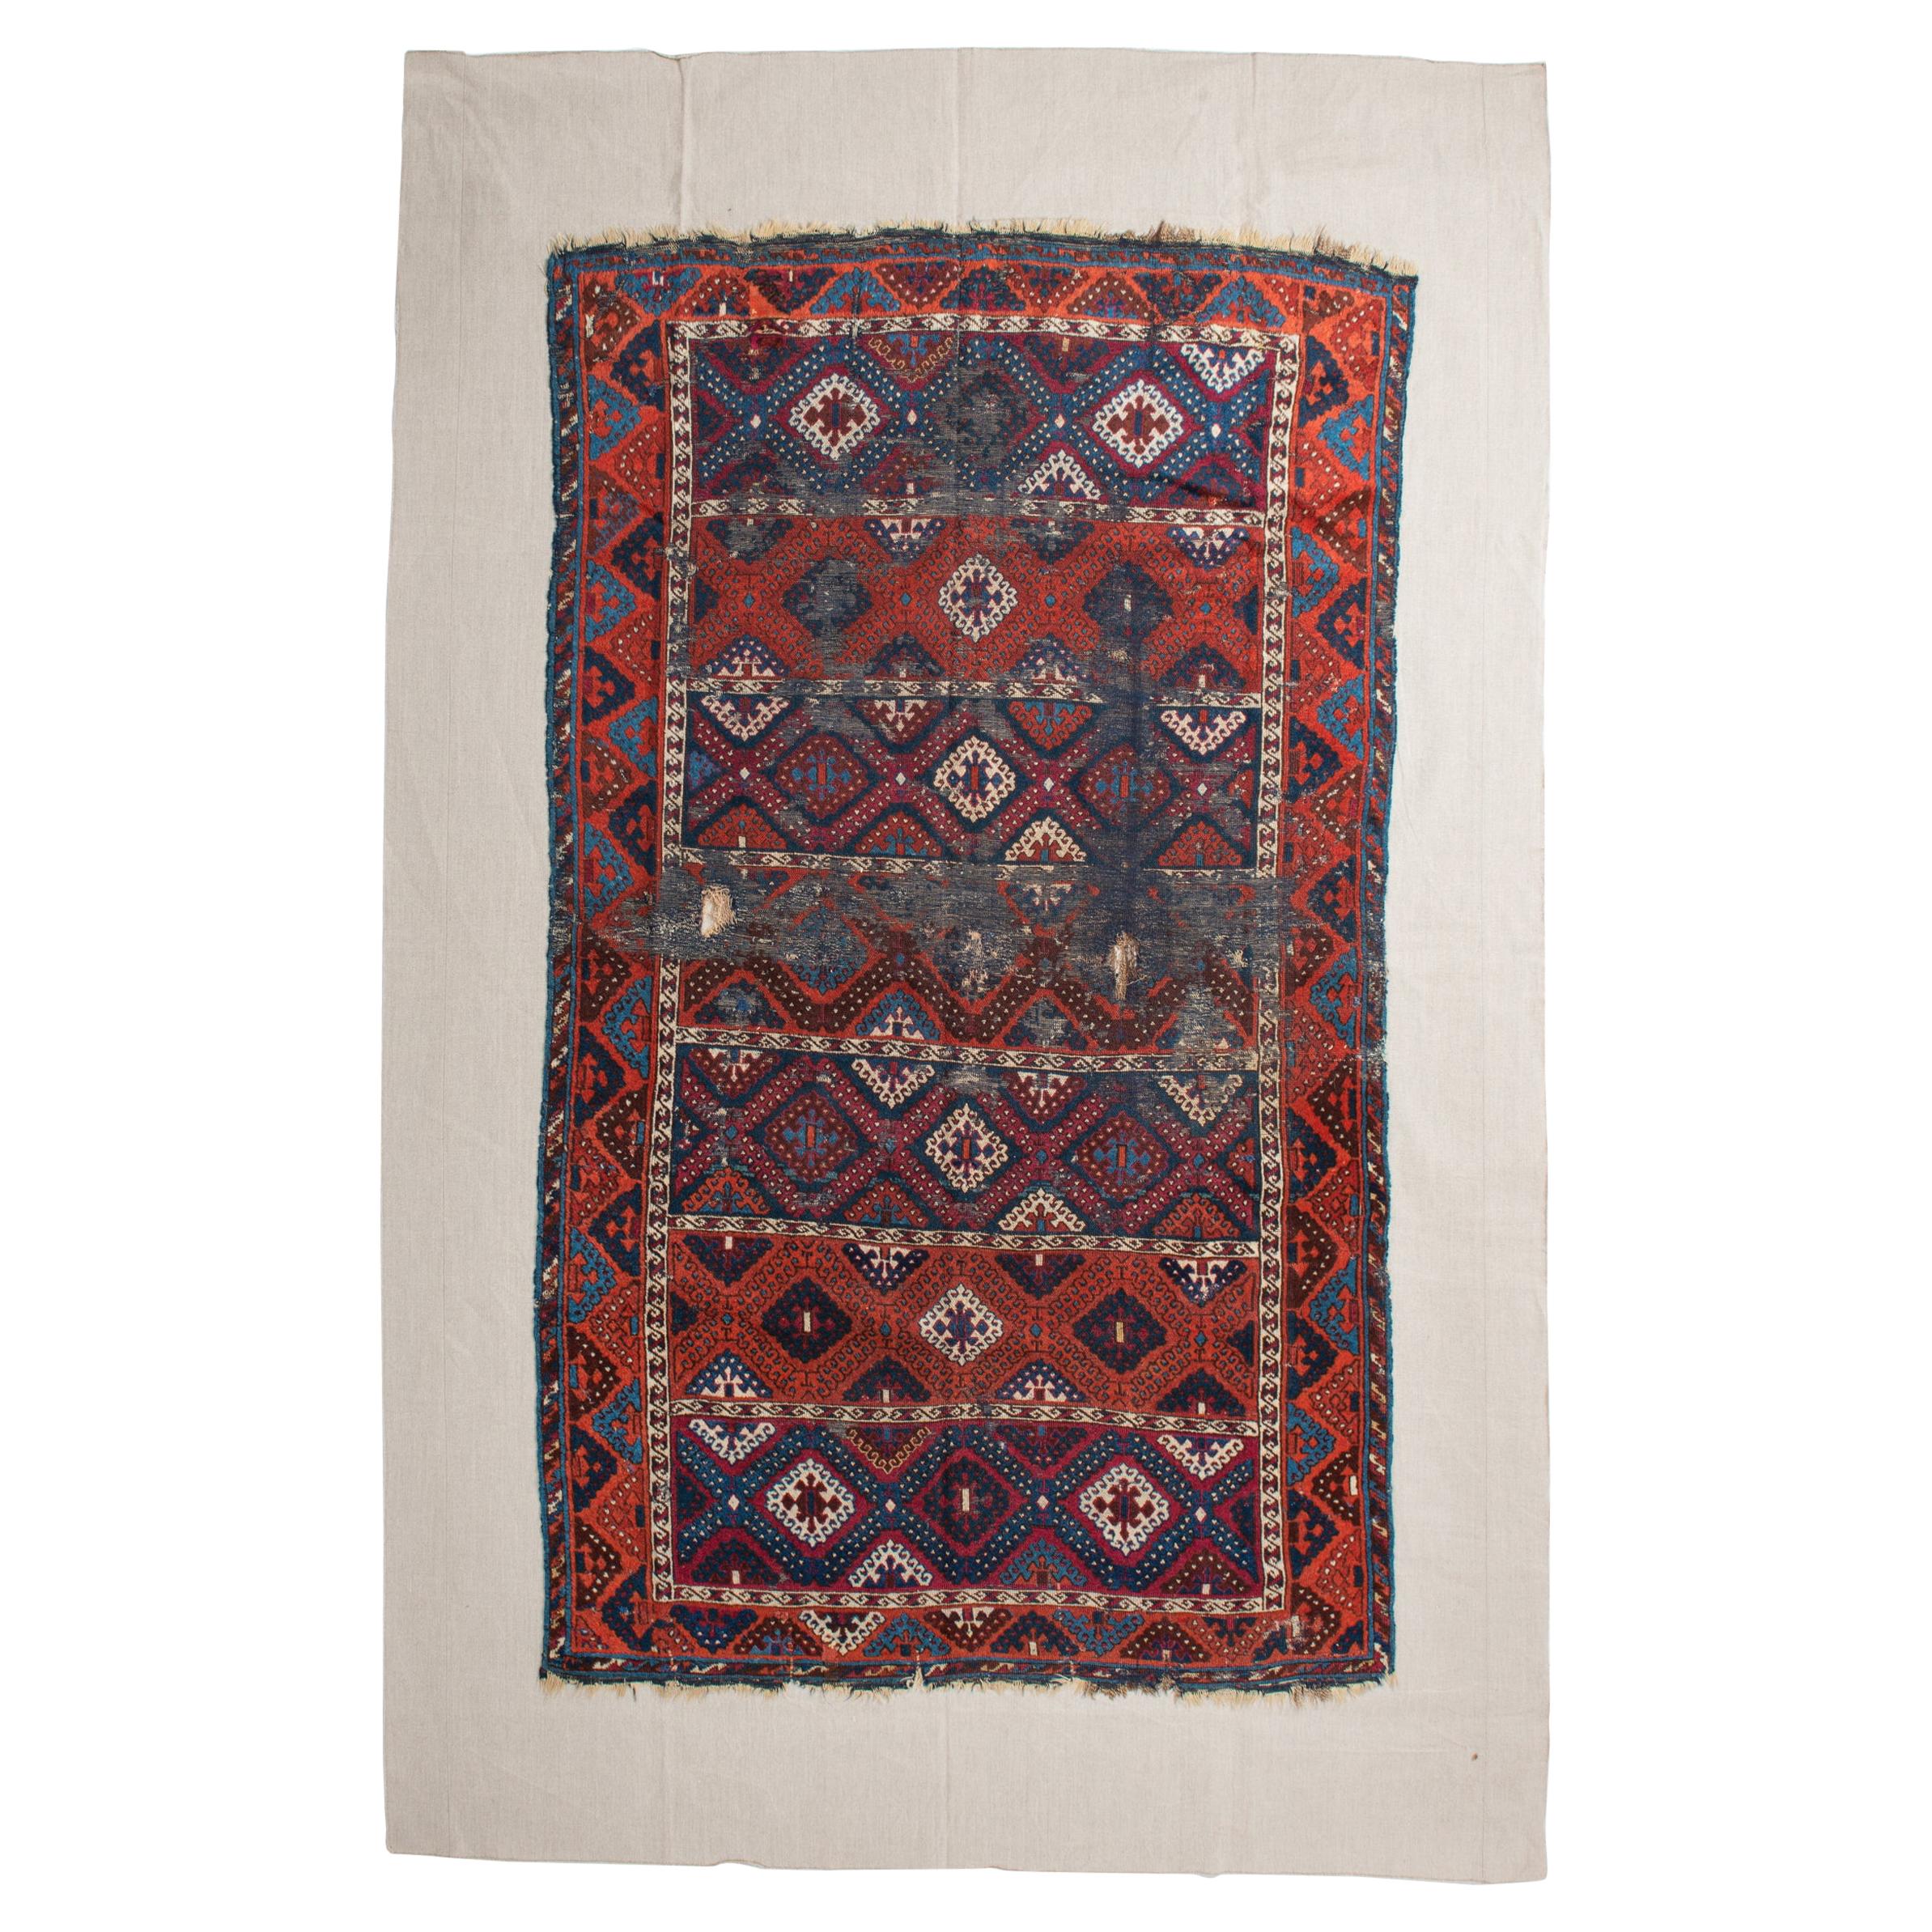 Fragment of Ancient Nomadic Carpet from Kurdestan